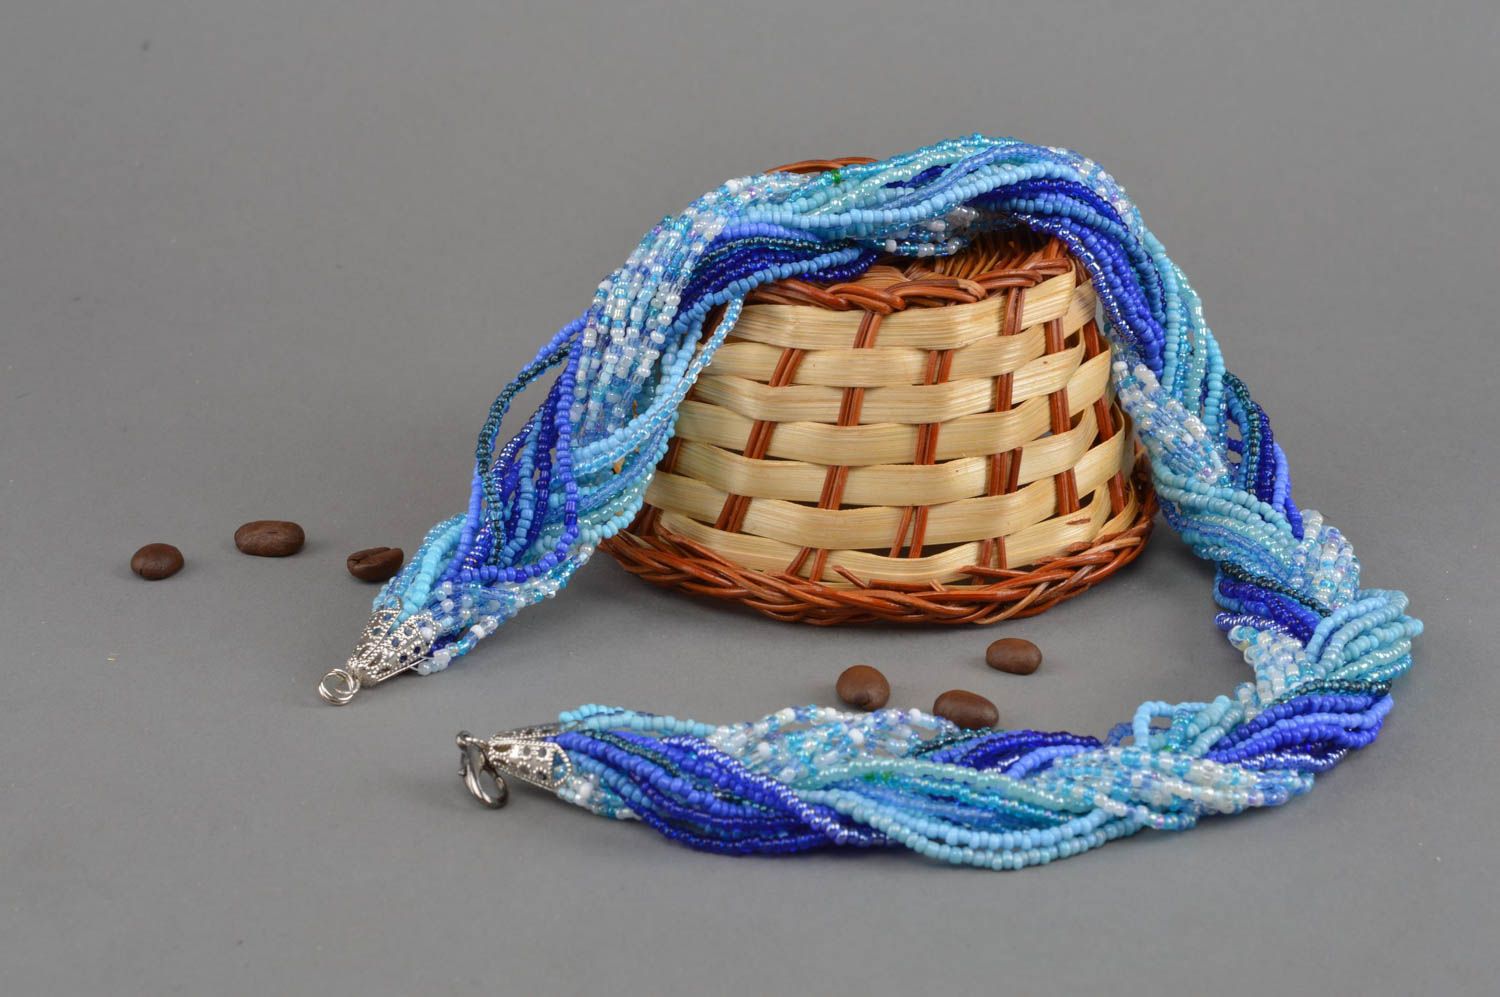 Ожерелье из бисера в синих и голубых тонах ручной работы плетеное в косичку  фото 1